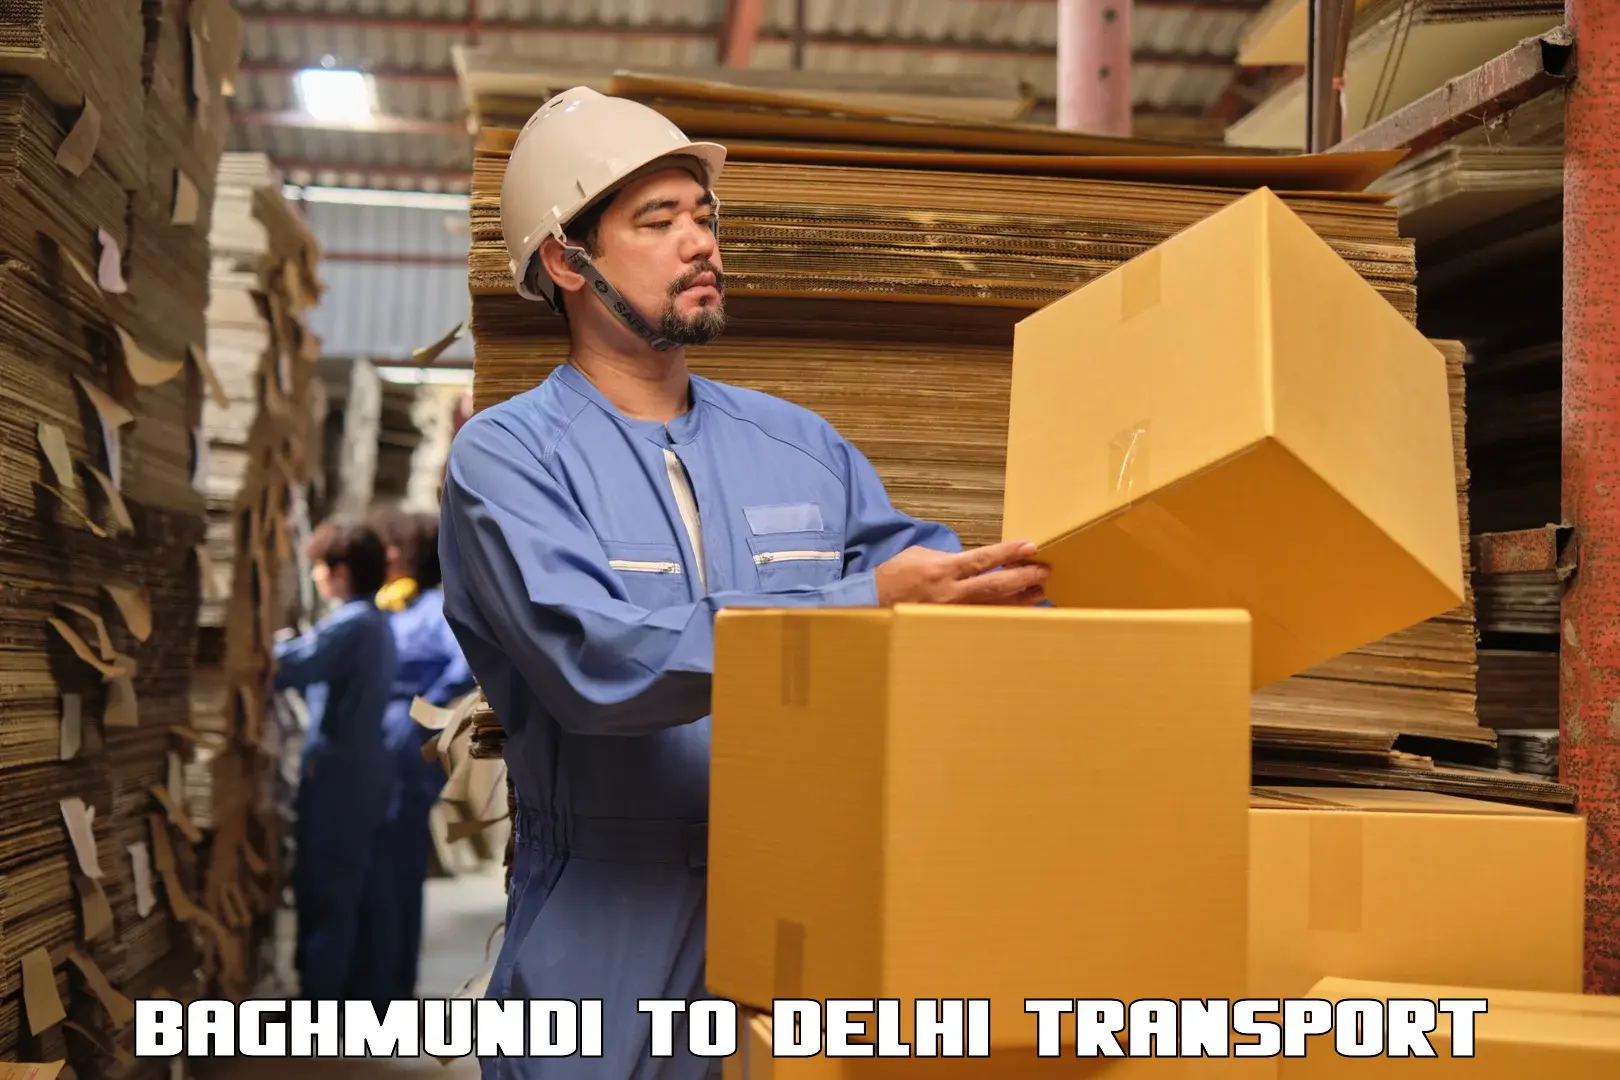 Express transport services Baghmundi to Delhi